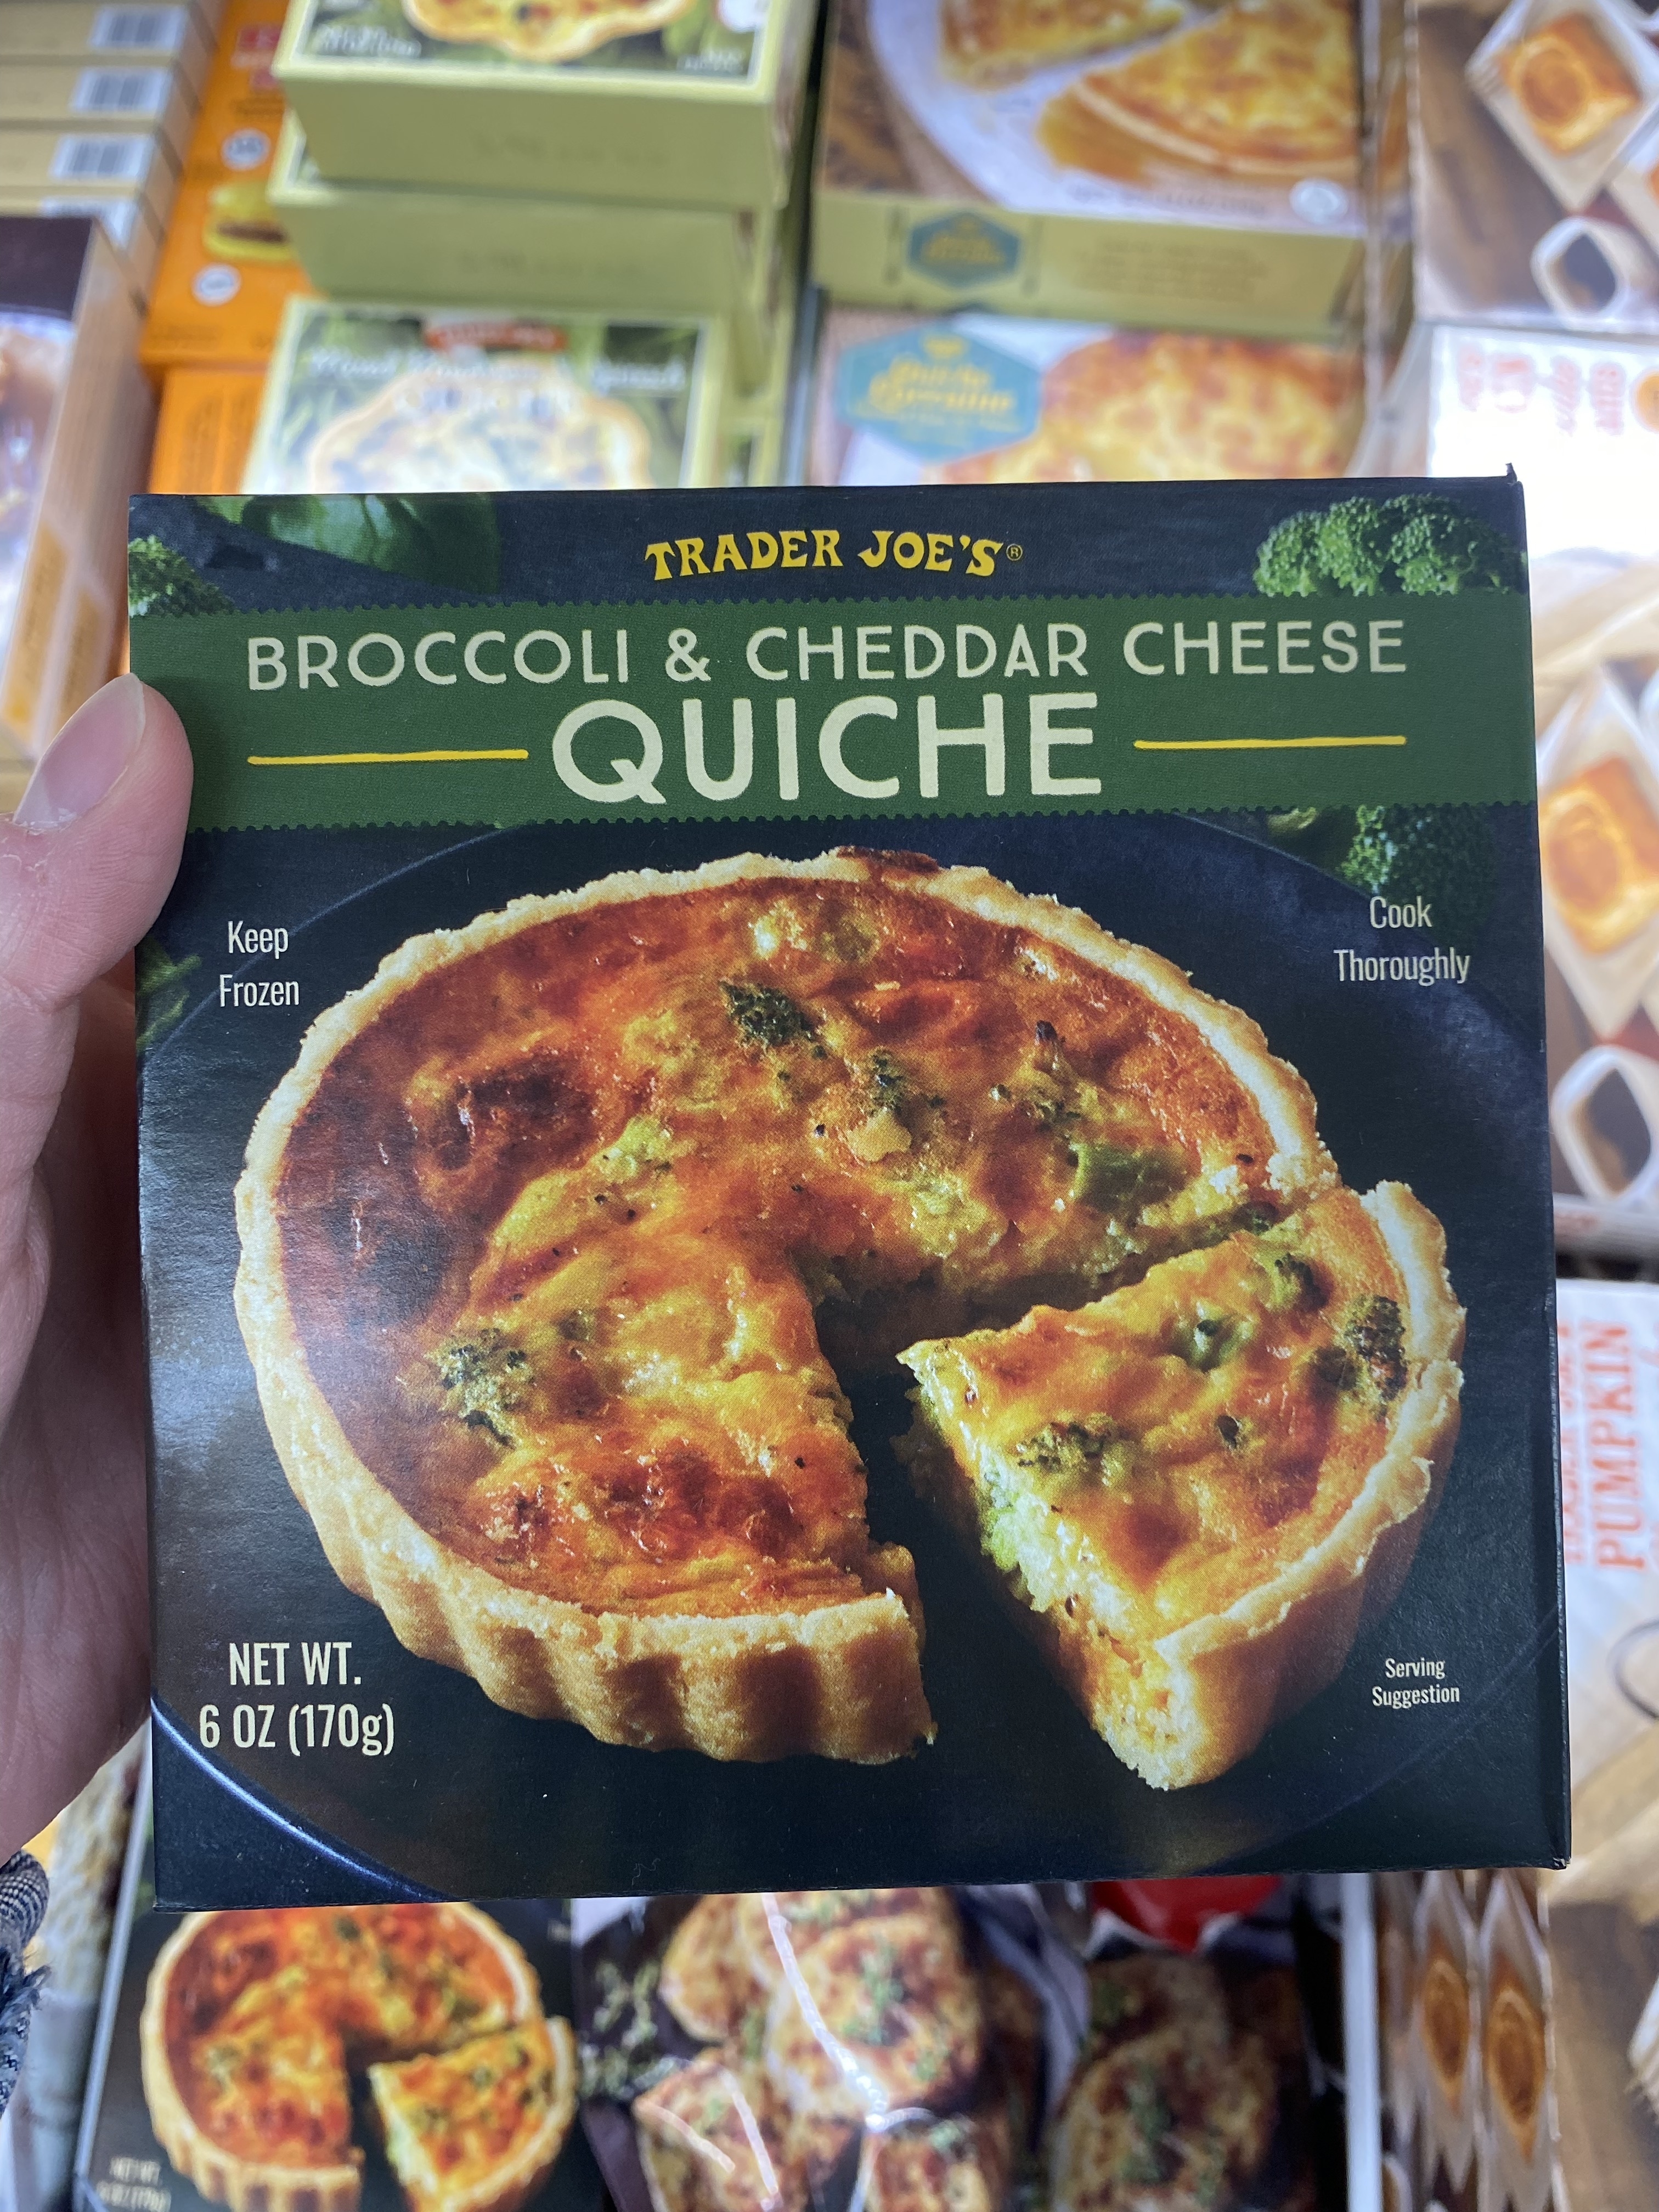 a box of the broccoli and cheddar quiche